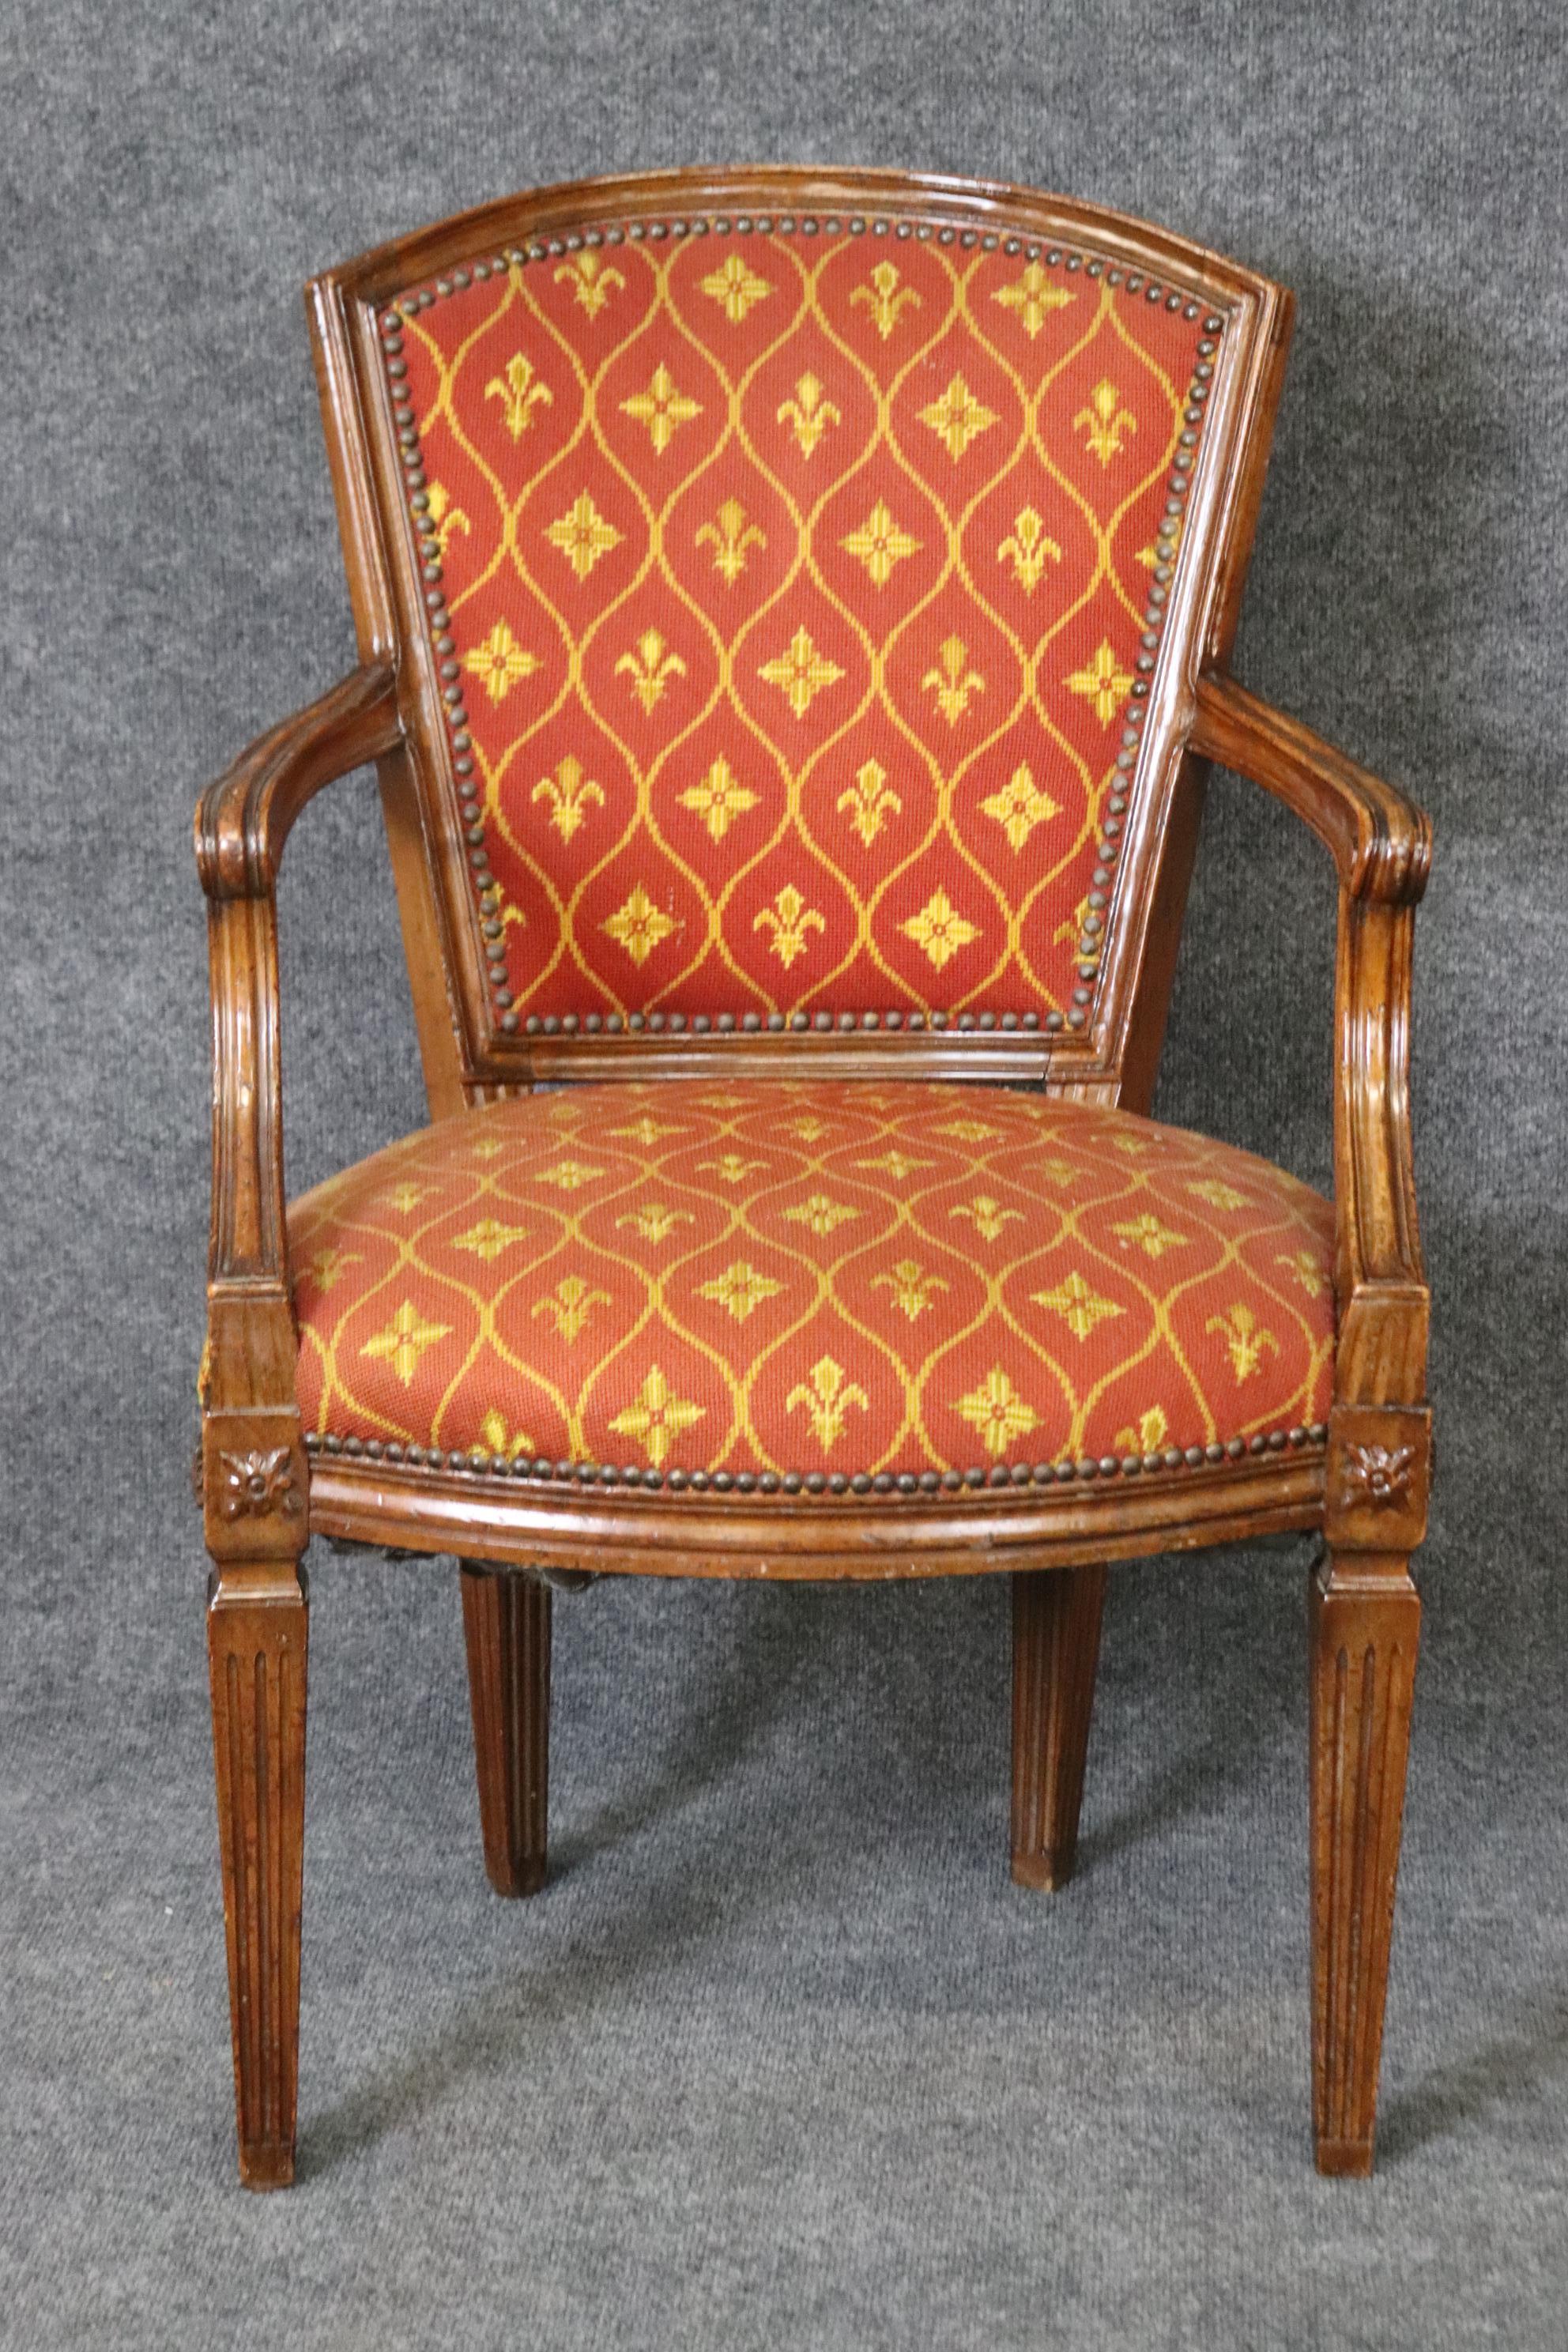 Abmessungen: Höhe: 37 1/4in Breite: 24 1/4in Tiefe: 26in Sitzhöhe: 18 1/4in 

Dieser schöne antike italienische Sessel aus dem 18. oder frühen 19. Jahrhundert im Stil Louis XVI aus geschnitztem Nussbaum ist von höchster Qualität! Der Stuhl ist in